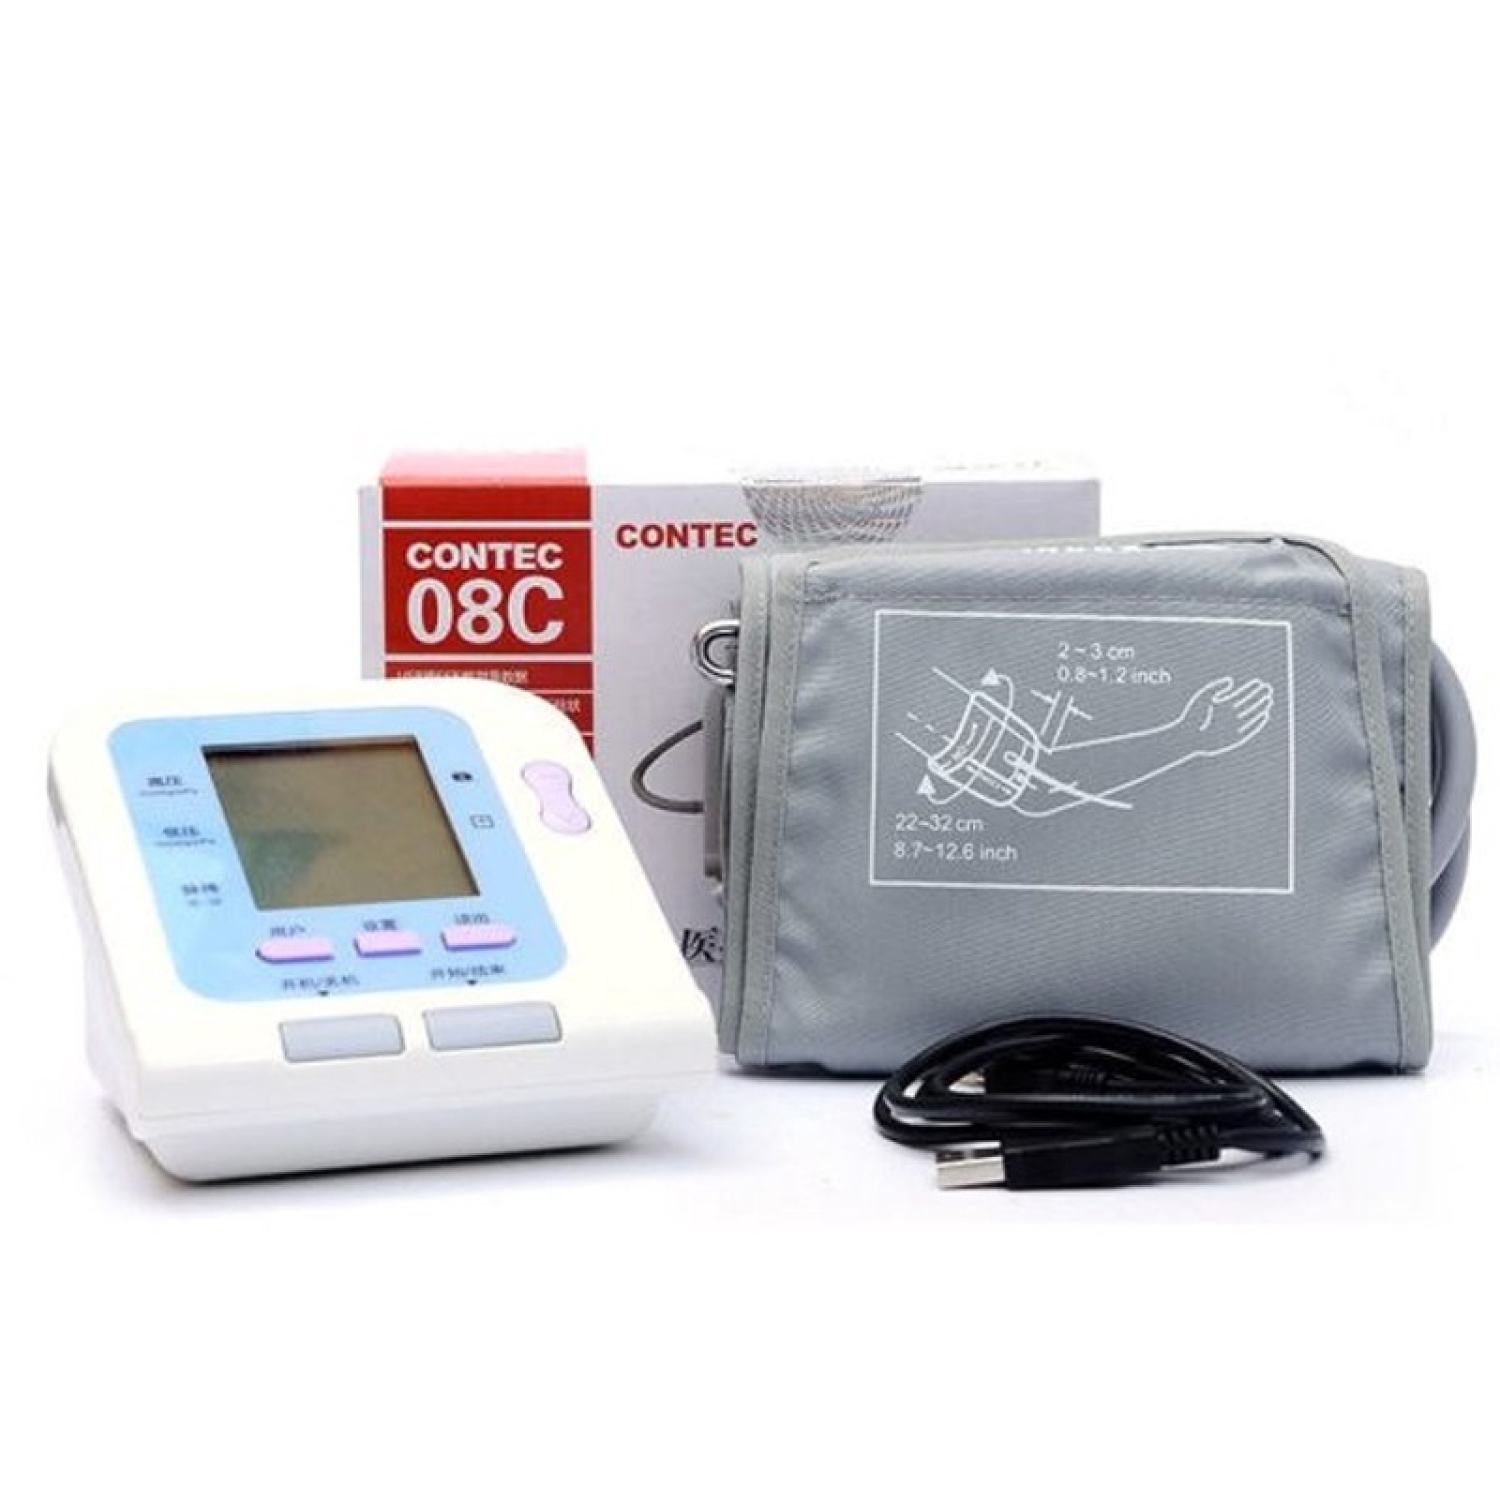 Máy đo huyết áp contec 08c - ảnh sản phẩm 2